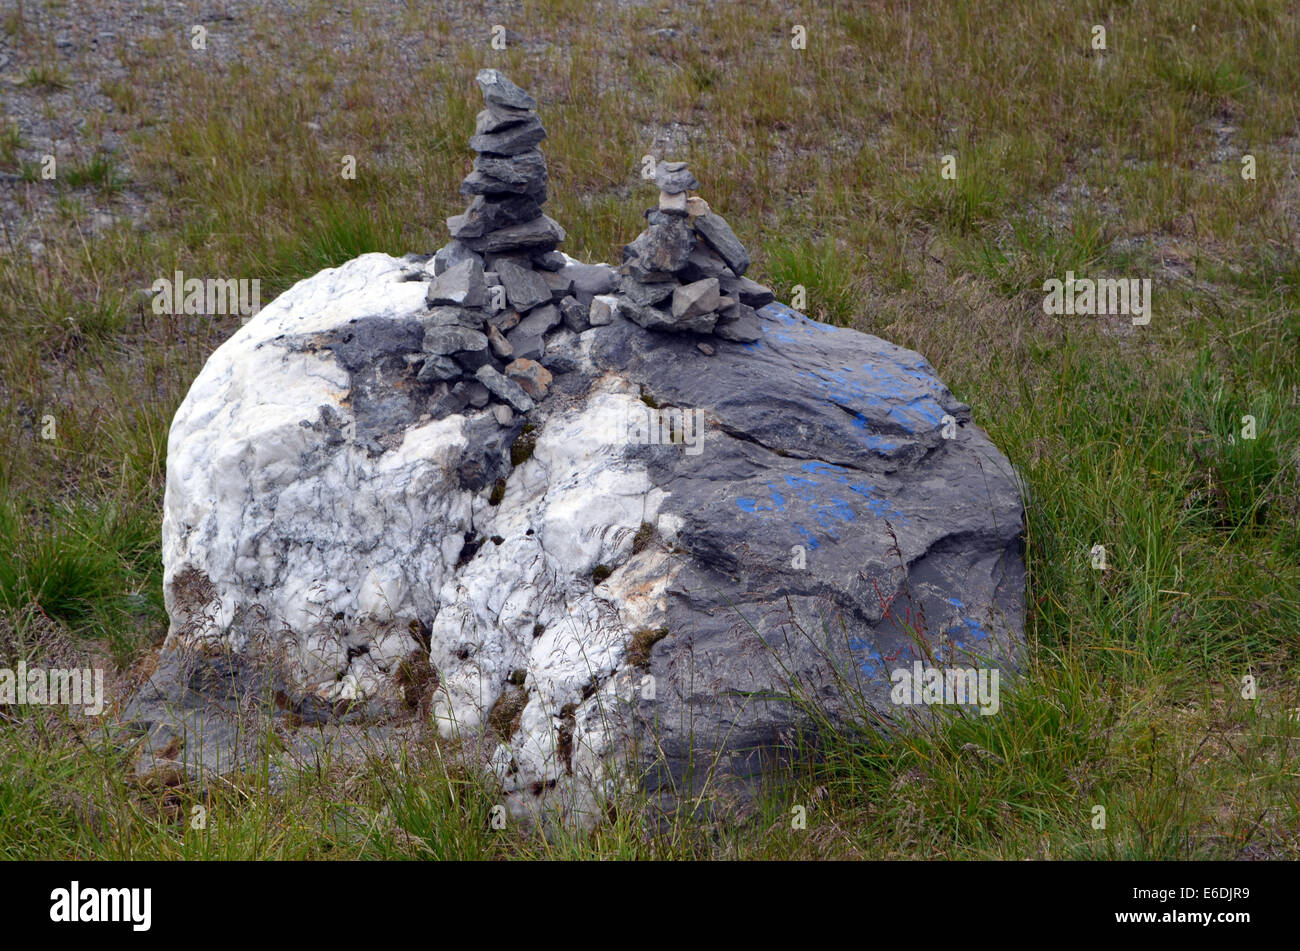 Un mystérieux tas de pierres, de toute évidence, construits à la main qui semble être une tradition Sami. Ils se trouvent tous sur la place. Banque D'Images